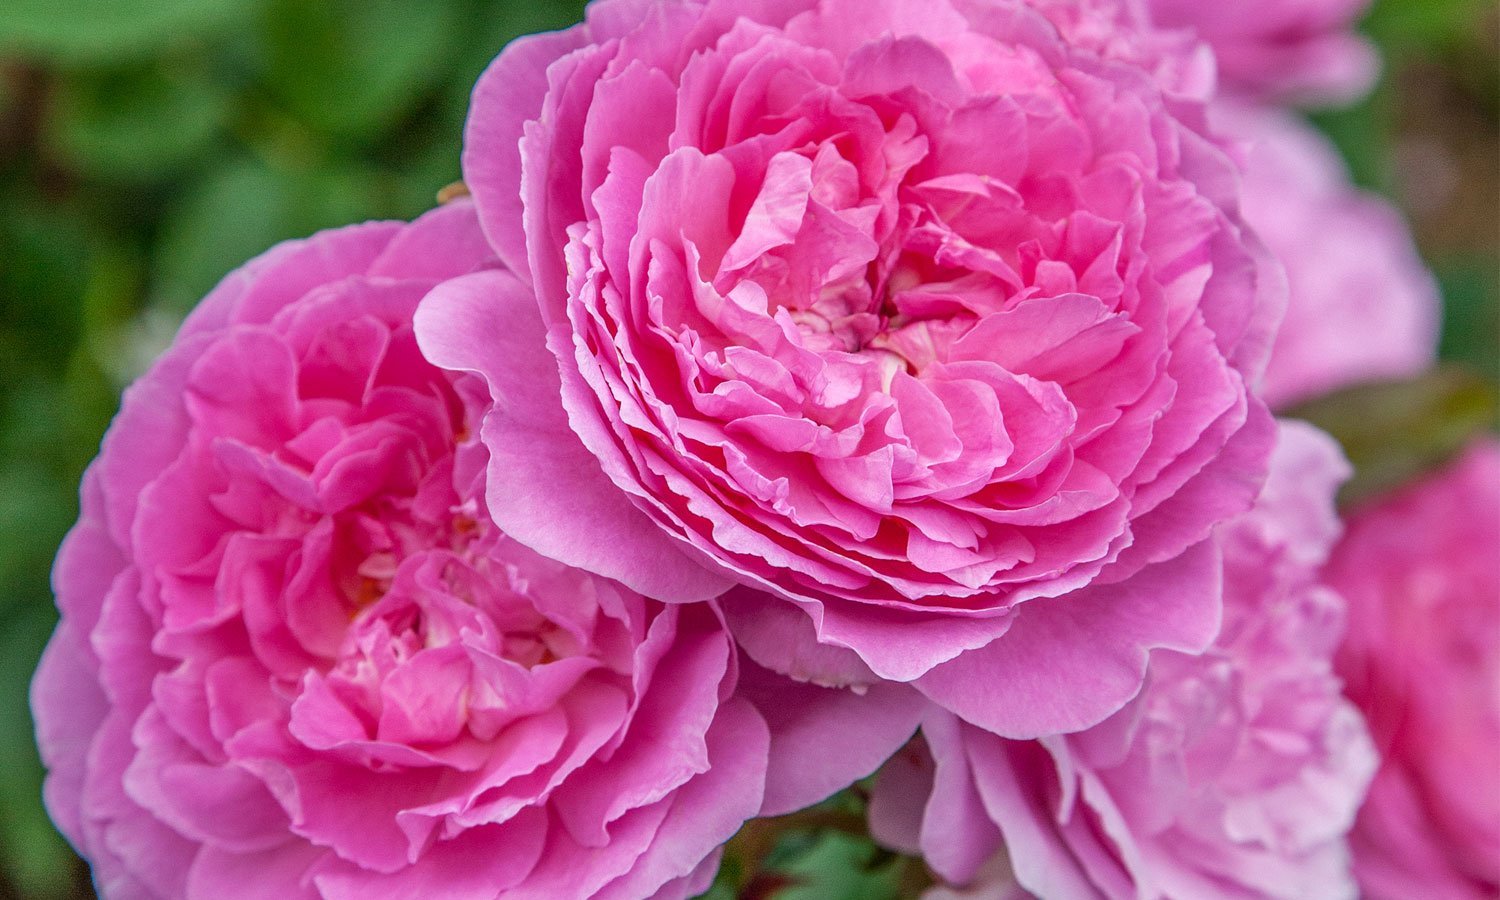 https://meilland.com/wp-content/uploads/meilland-roses_varietes-jardin_baie-des-anges-romantica.jpg